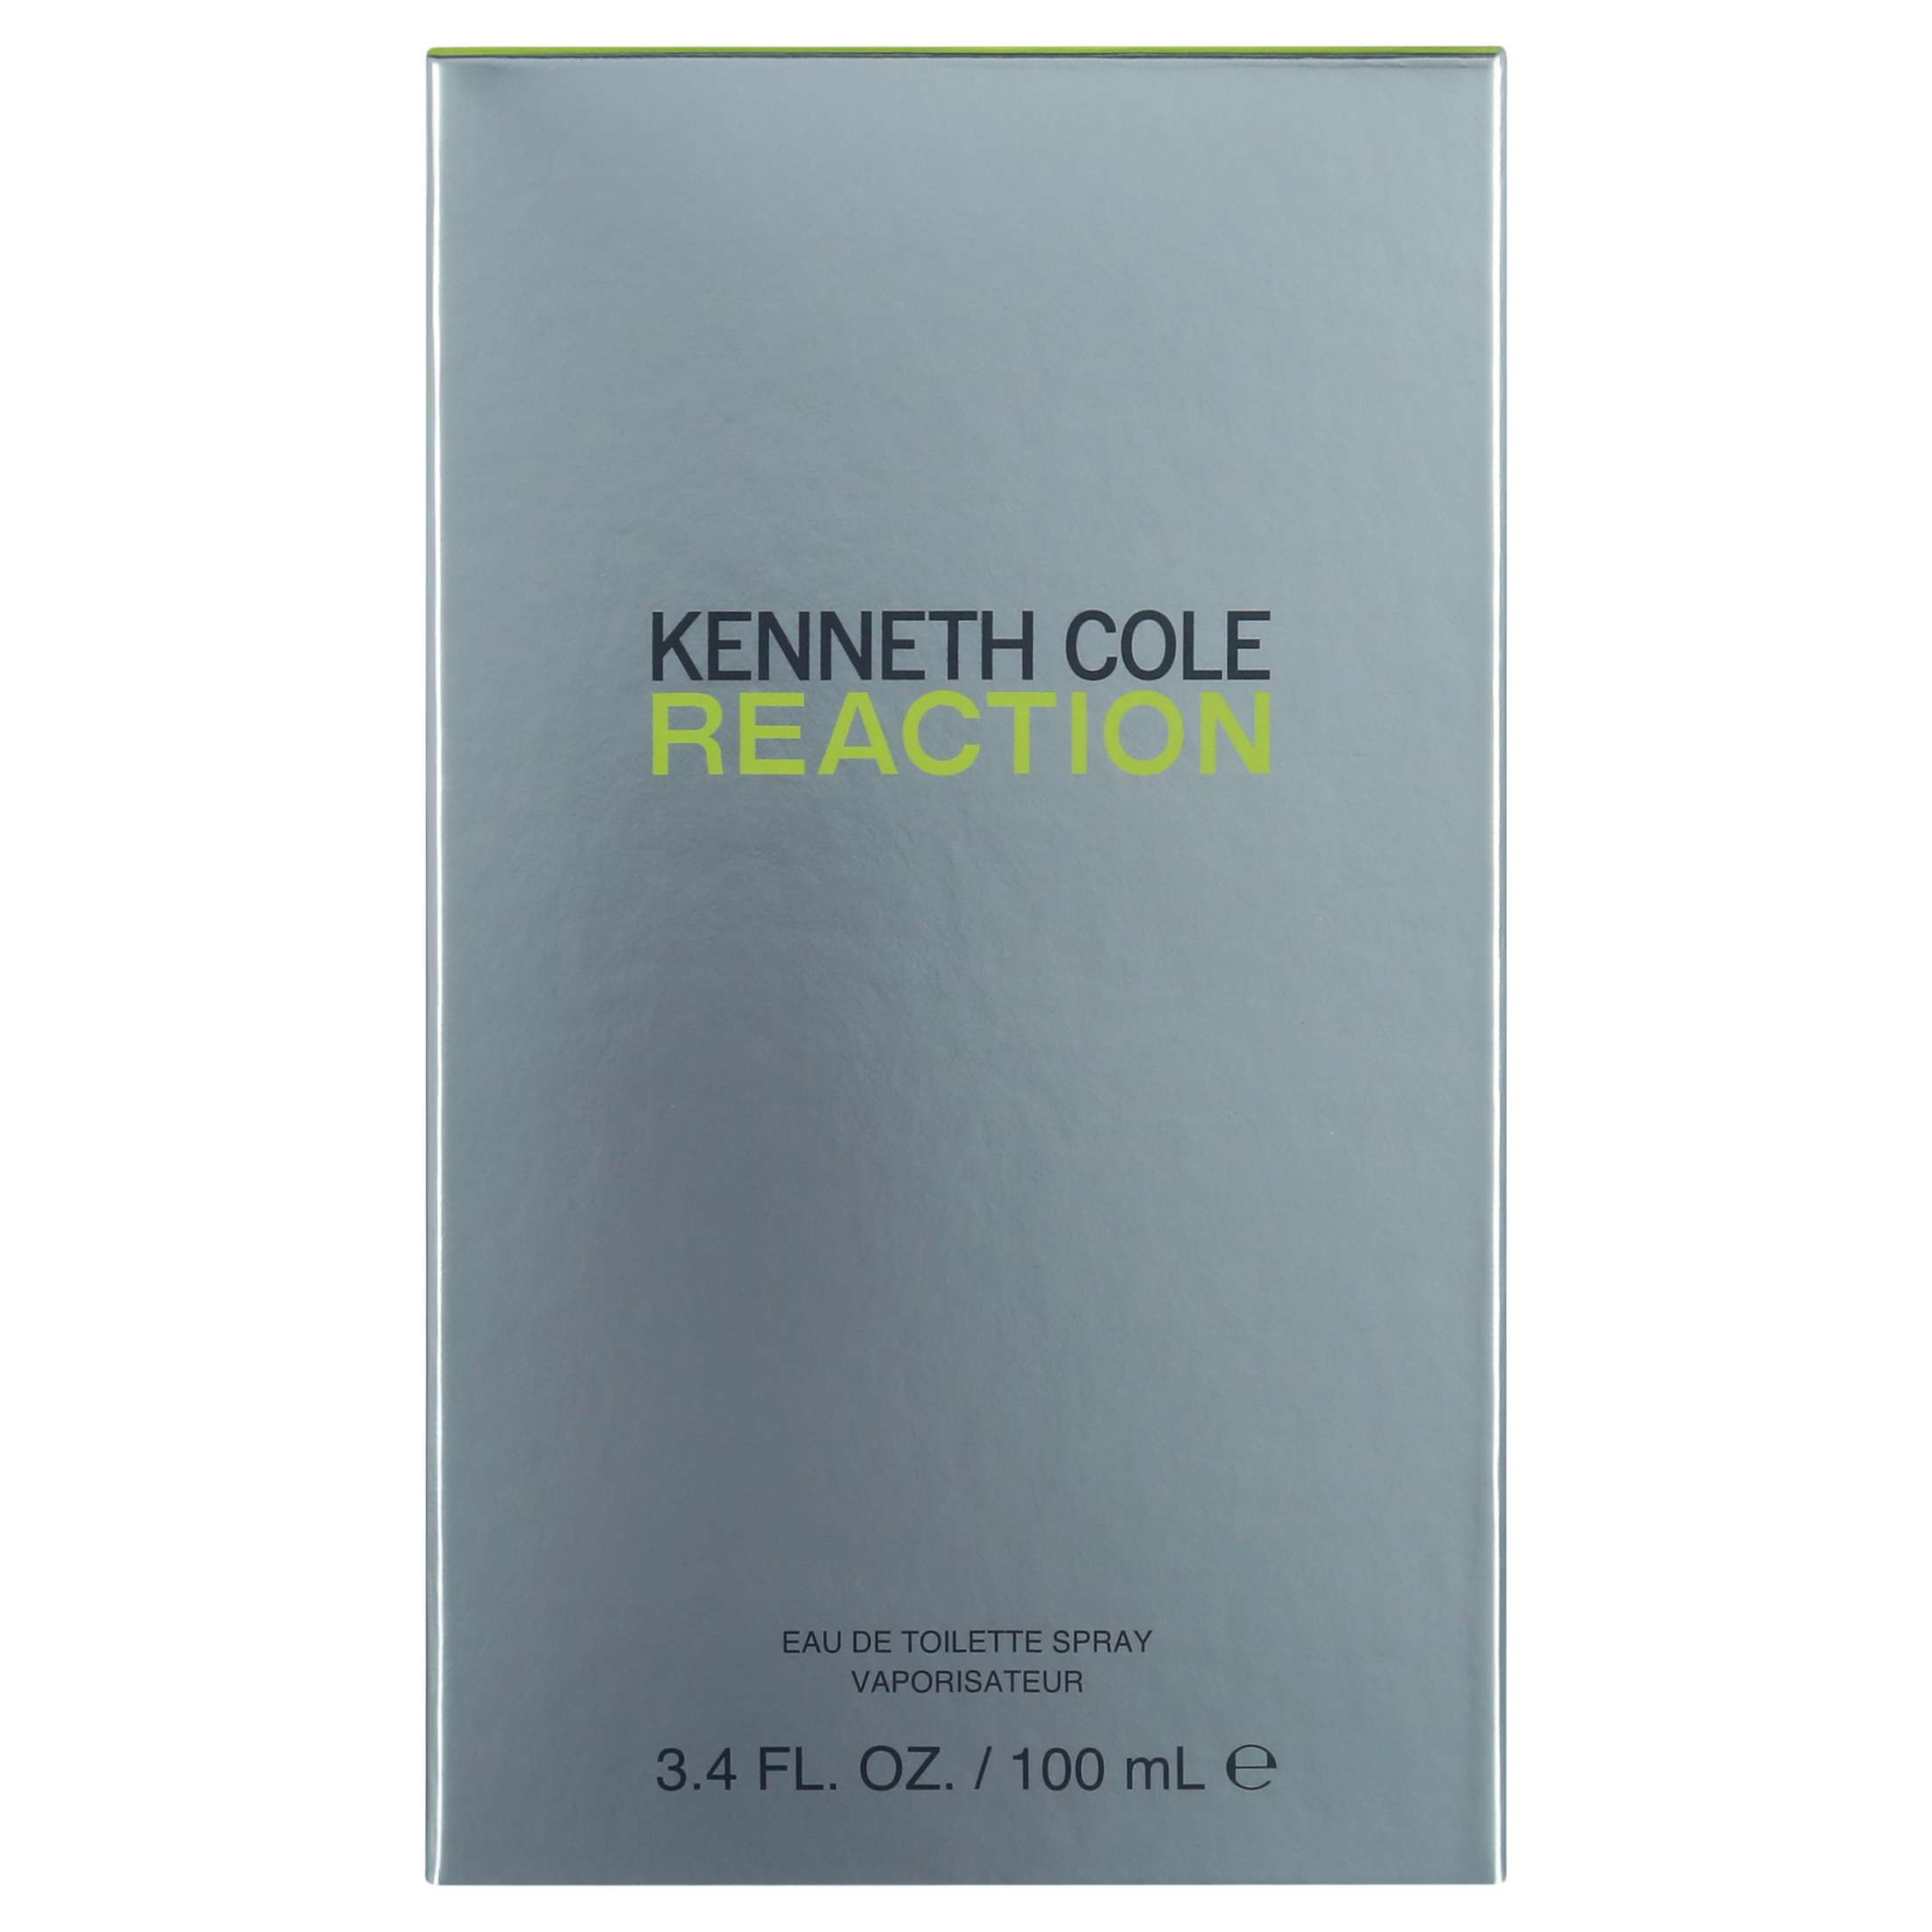 Kenenth Cole Reaction Eau de Toilette, Cologne for Men, 3.4 oz - image 2 of 6